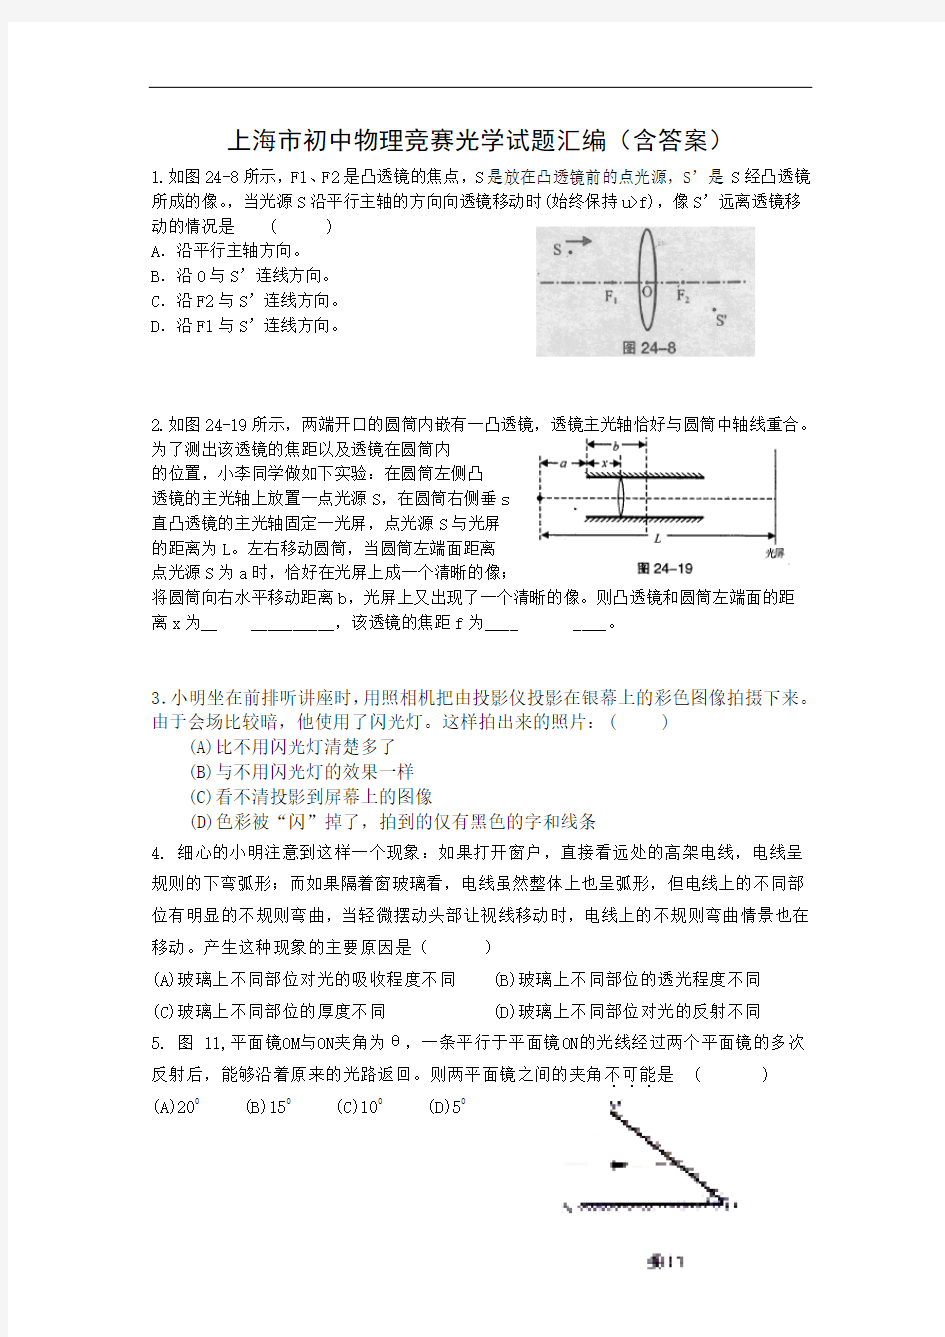 上海初中物理竞赛光学试题汇编(含答案)讲解